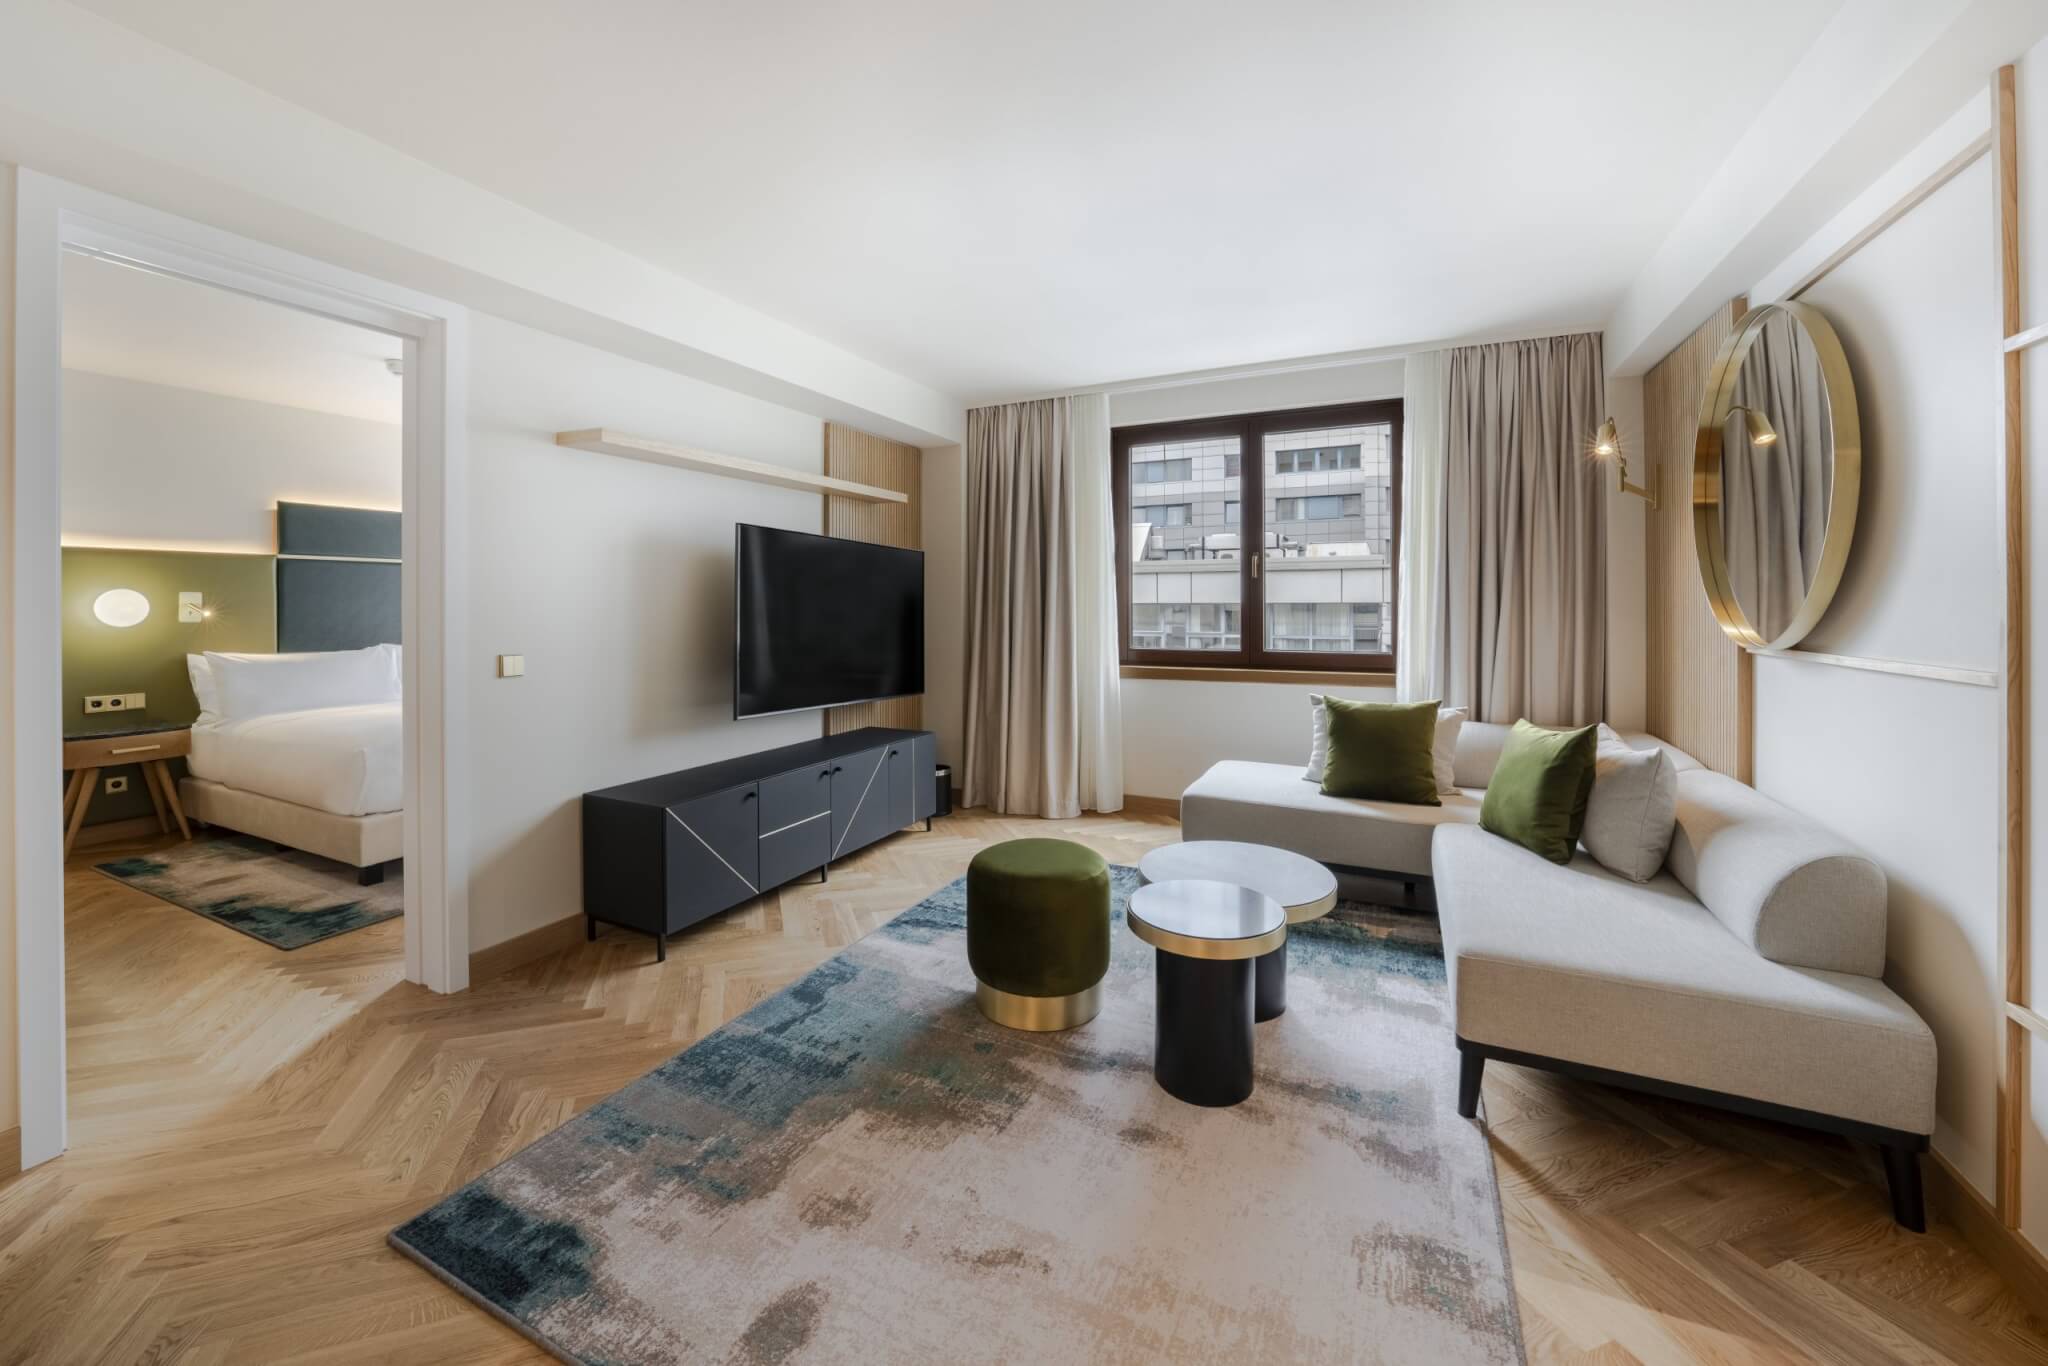 Hilton Berlin stellt exklusive neue Suiten und Residences vor